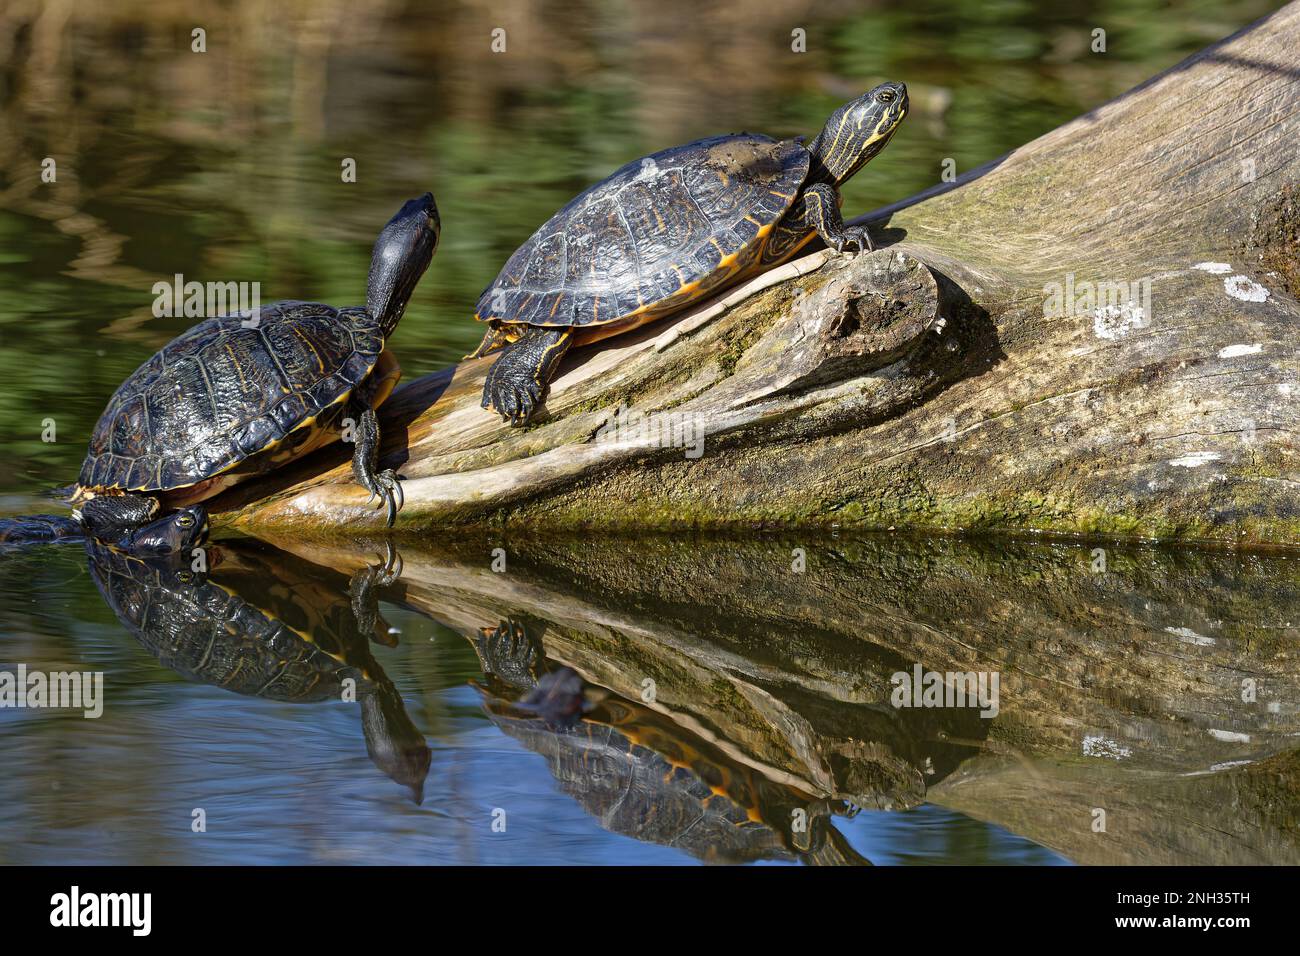 Remorquez des tortues sur une branche, réfléchissent dans les eaux vertes Banque D'Images